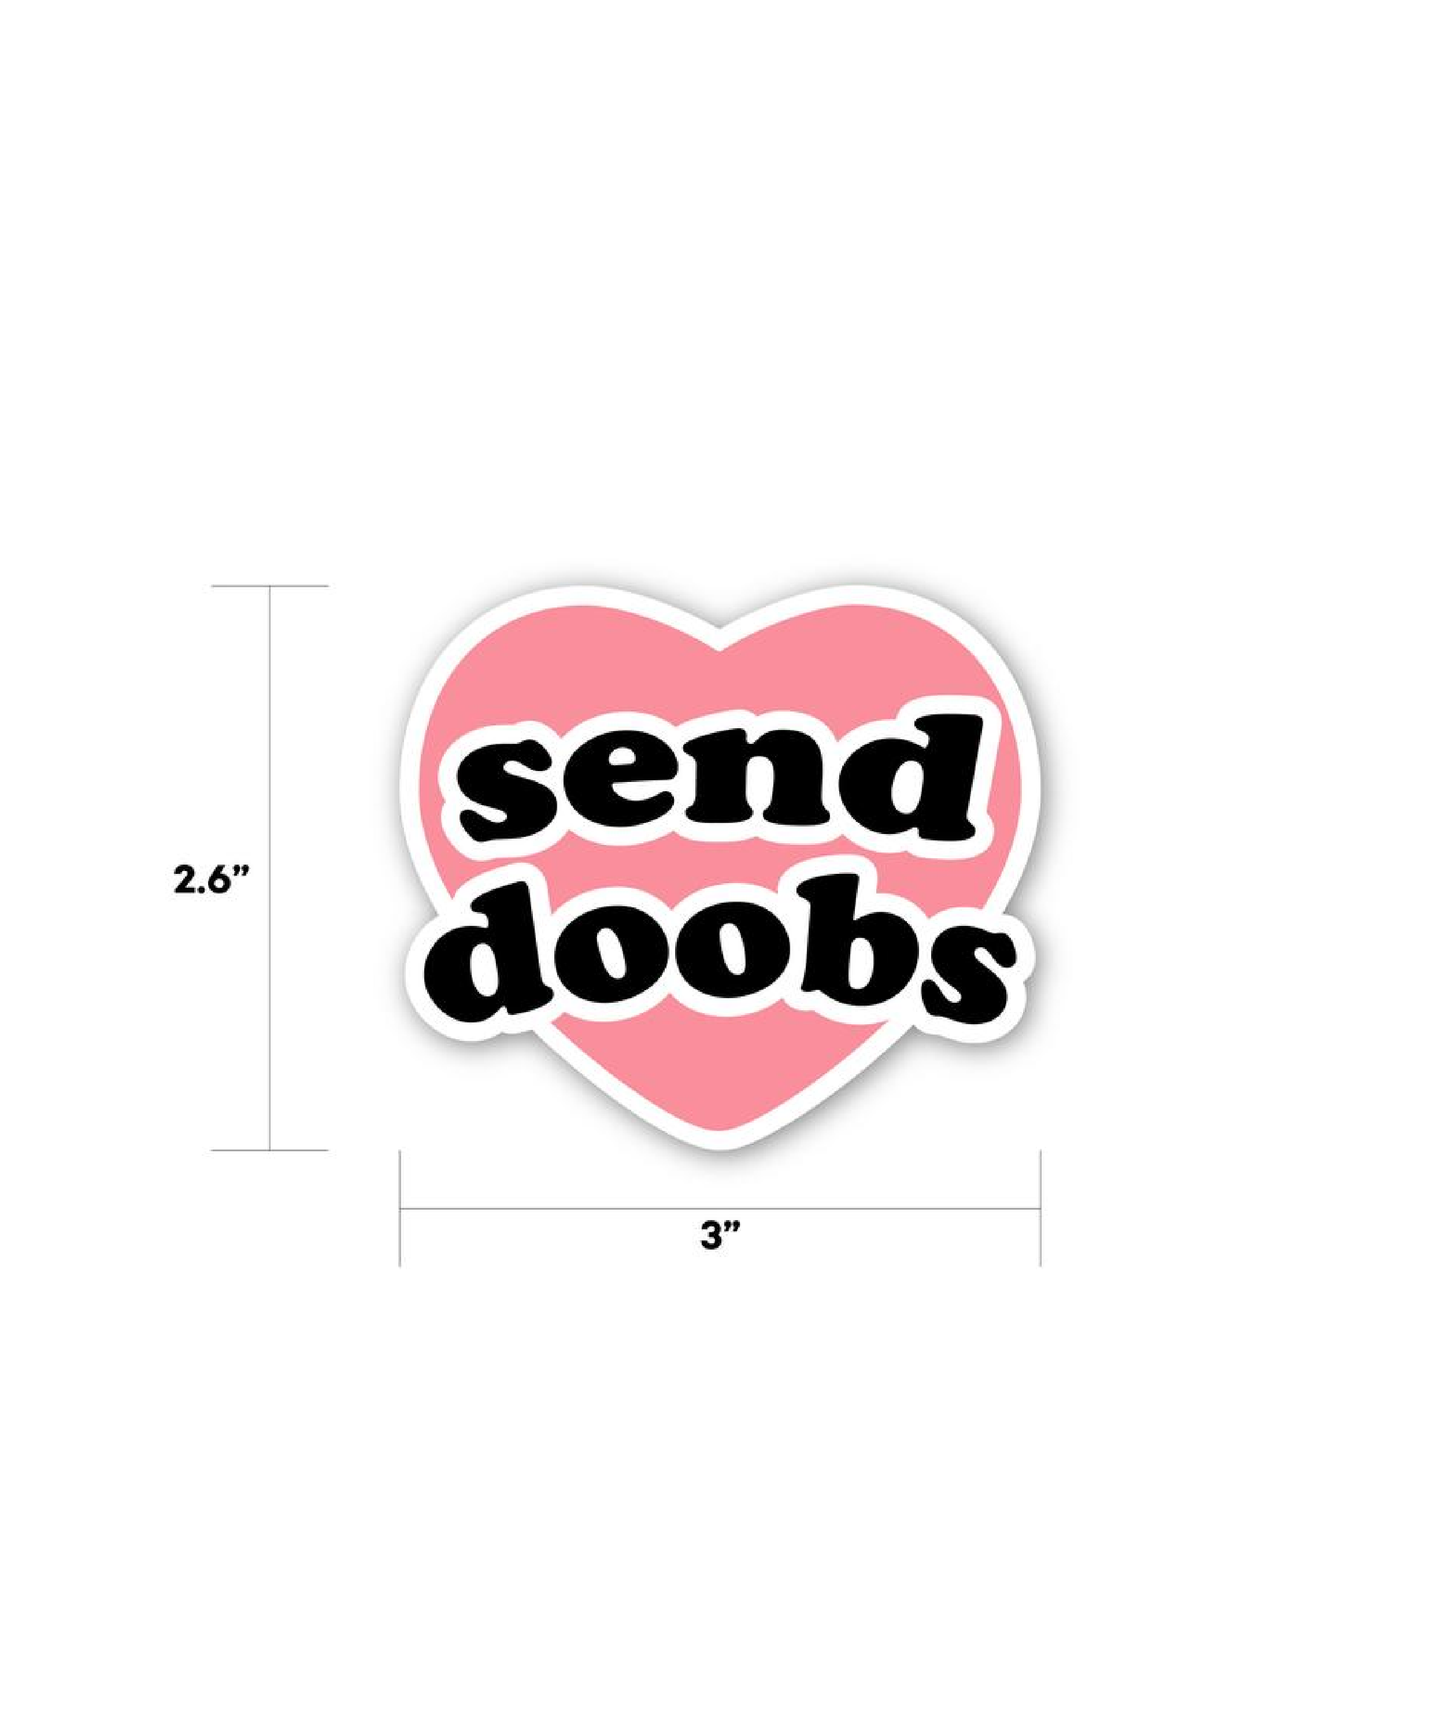 send doobs